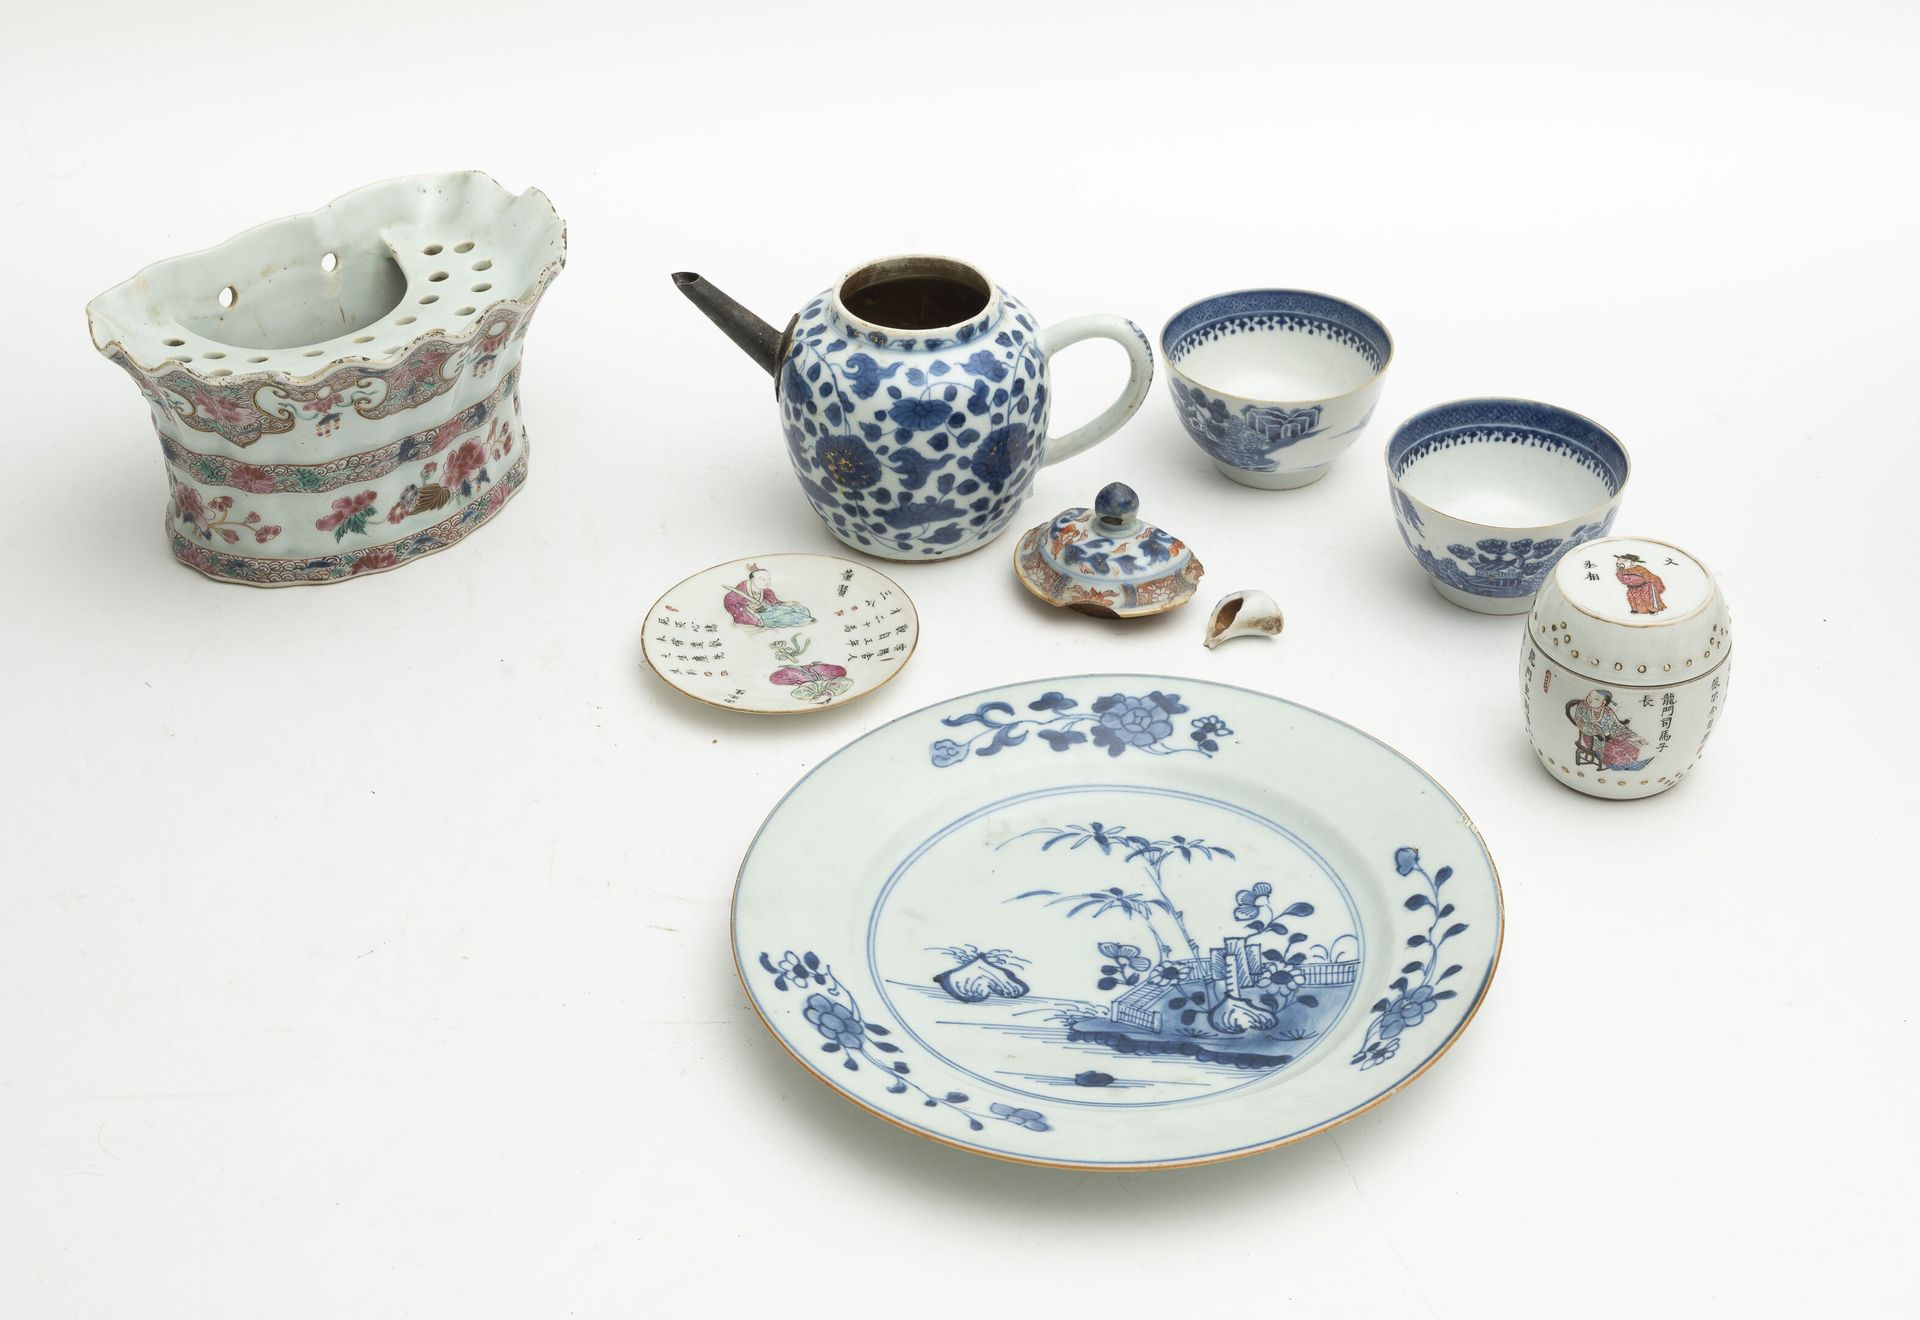 CHINE, XVIIIème-XIXème siècle Juego de 7 piezas de porcelana:

- Un candelabro c&hellip;